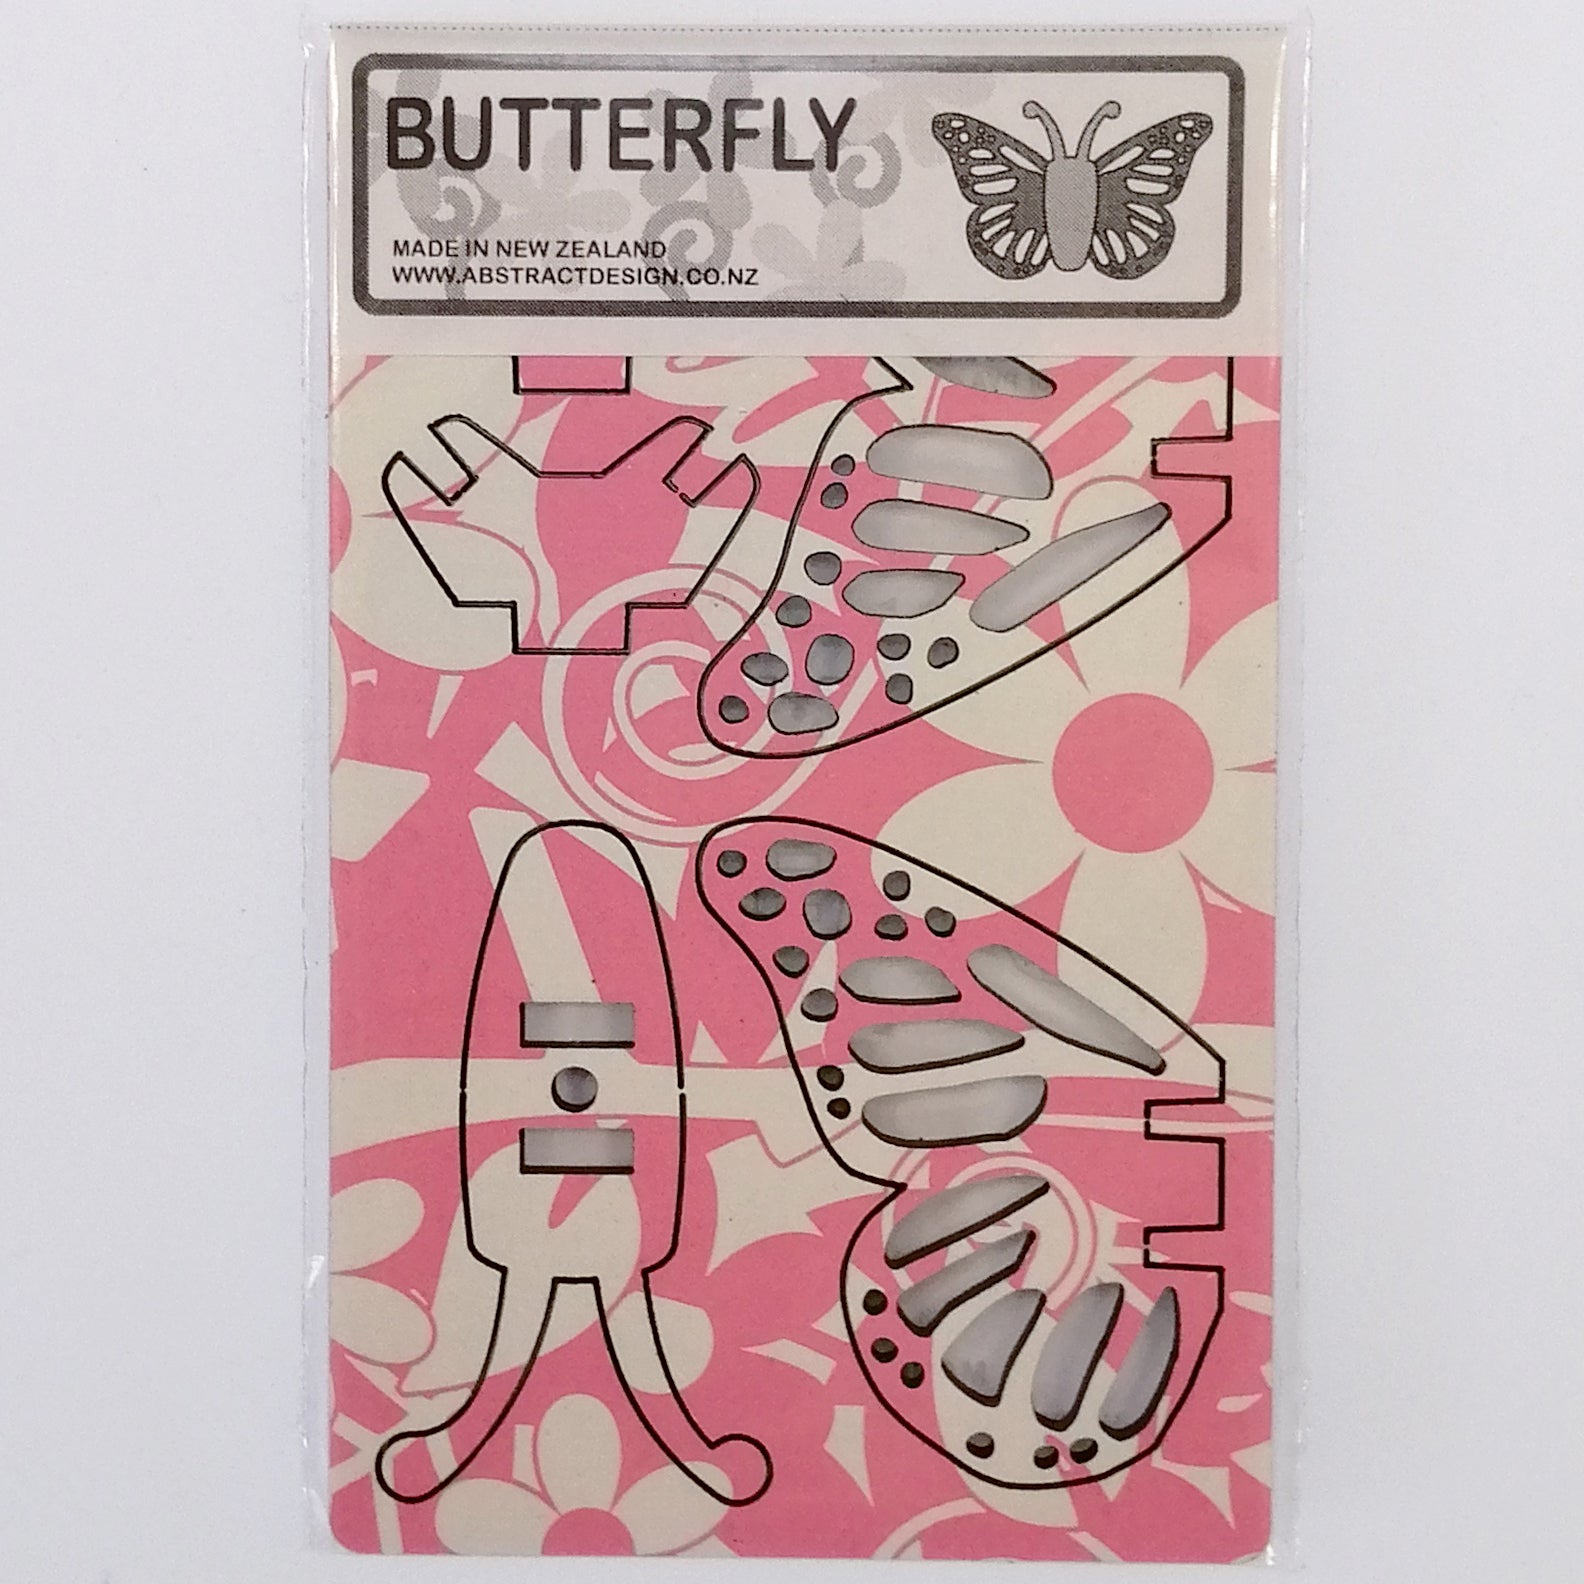 Flat-pack Kitset Wooden Model - Mini Butterfly - Pink Pattern